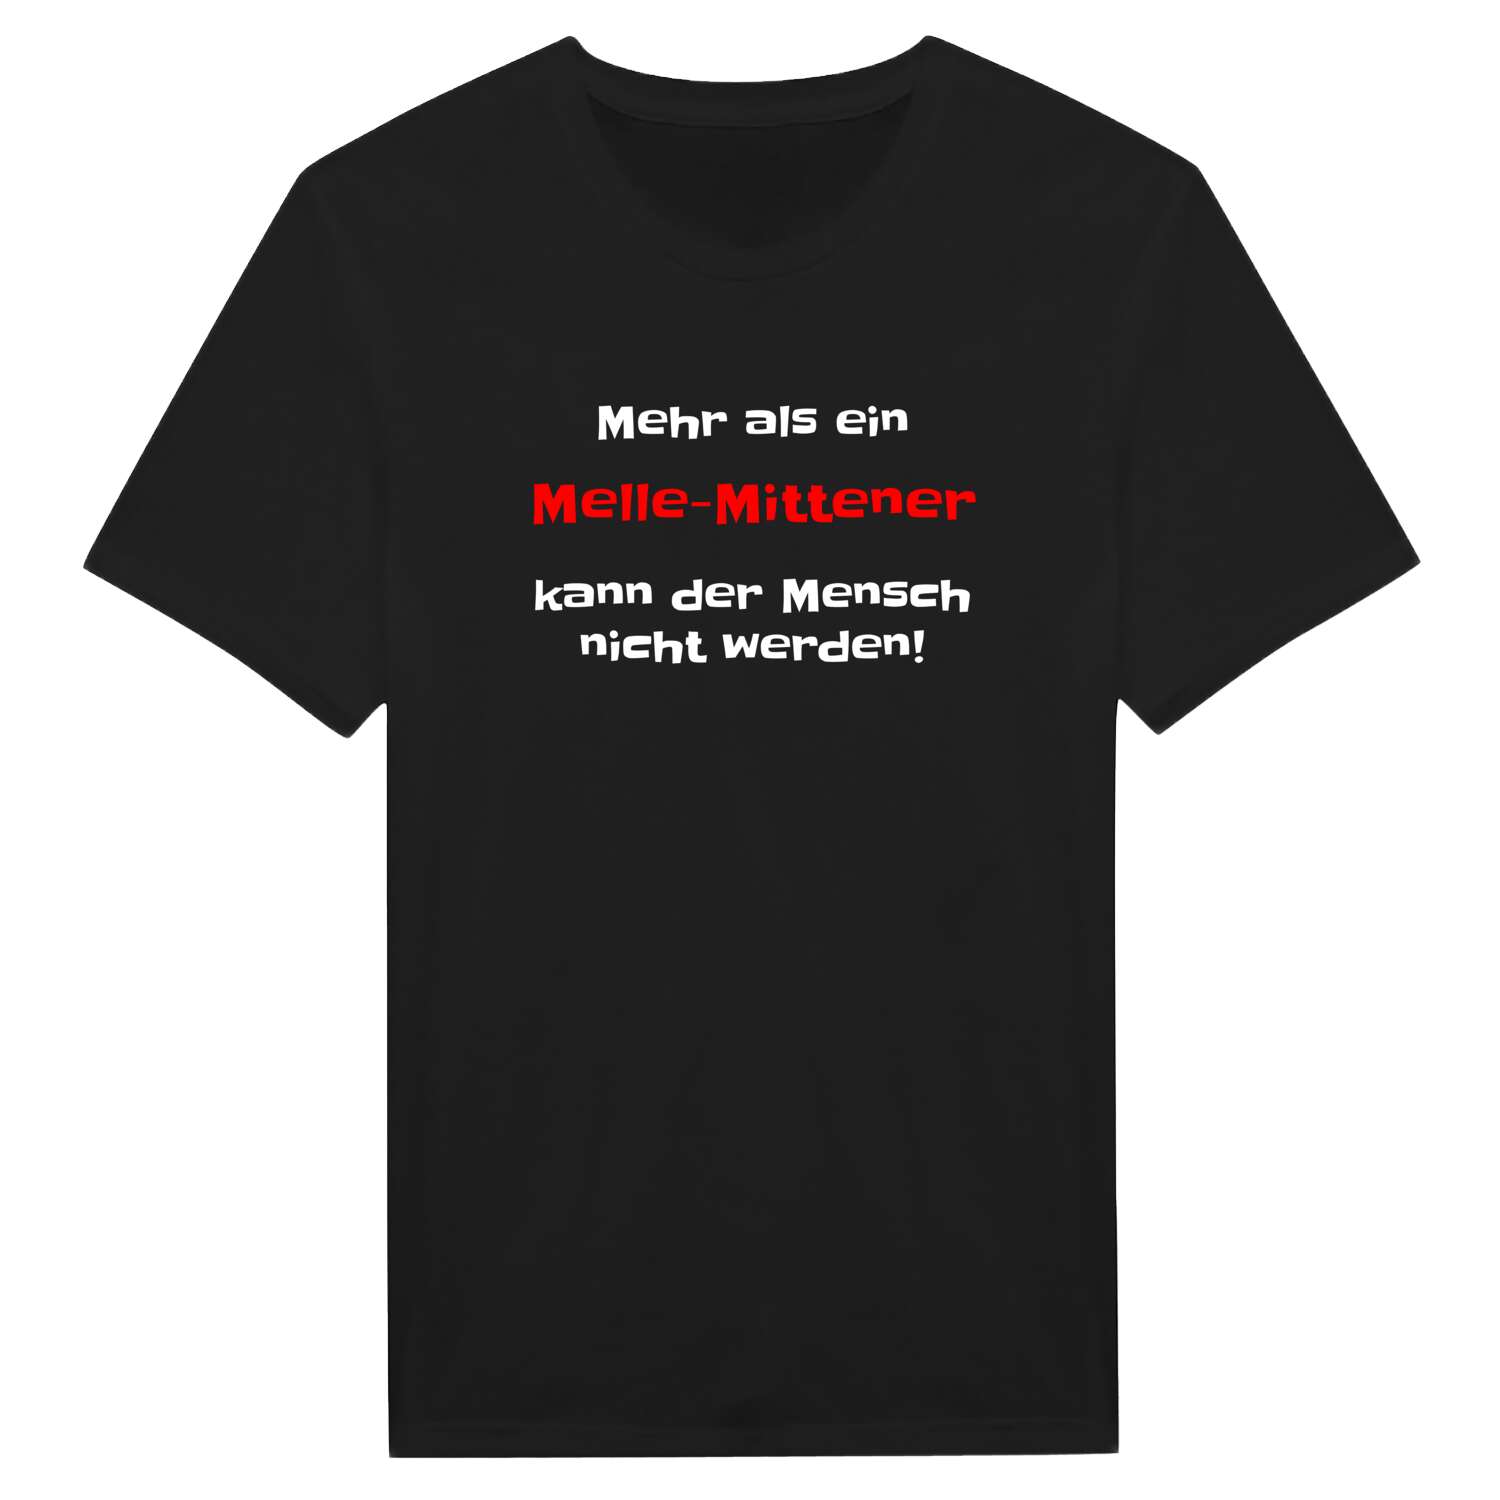 Melle-Mitte T-Shirt »Mehr als ein«